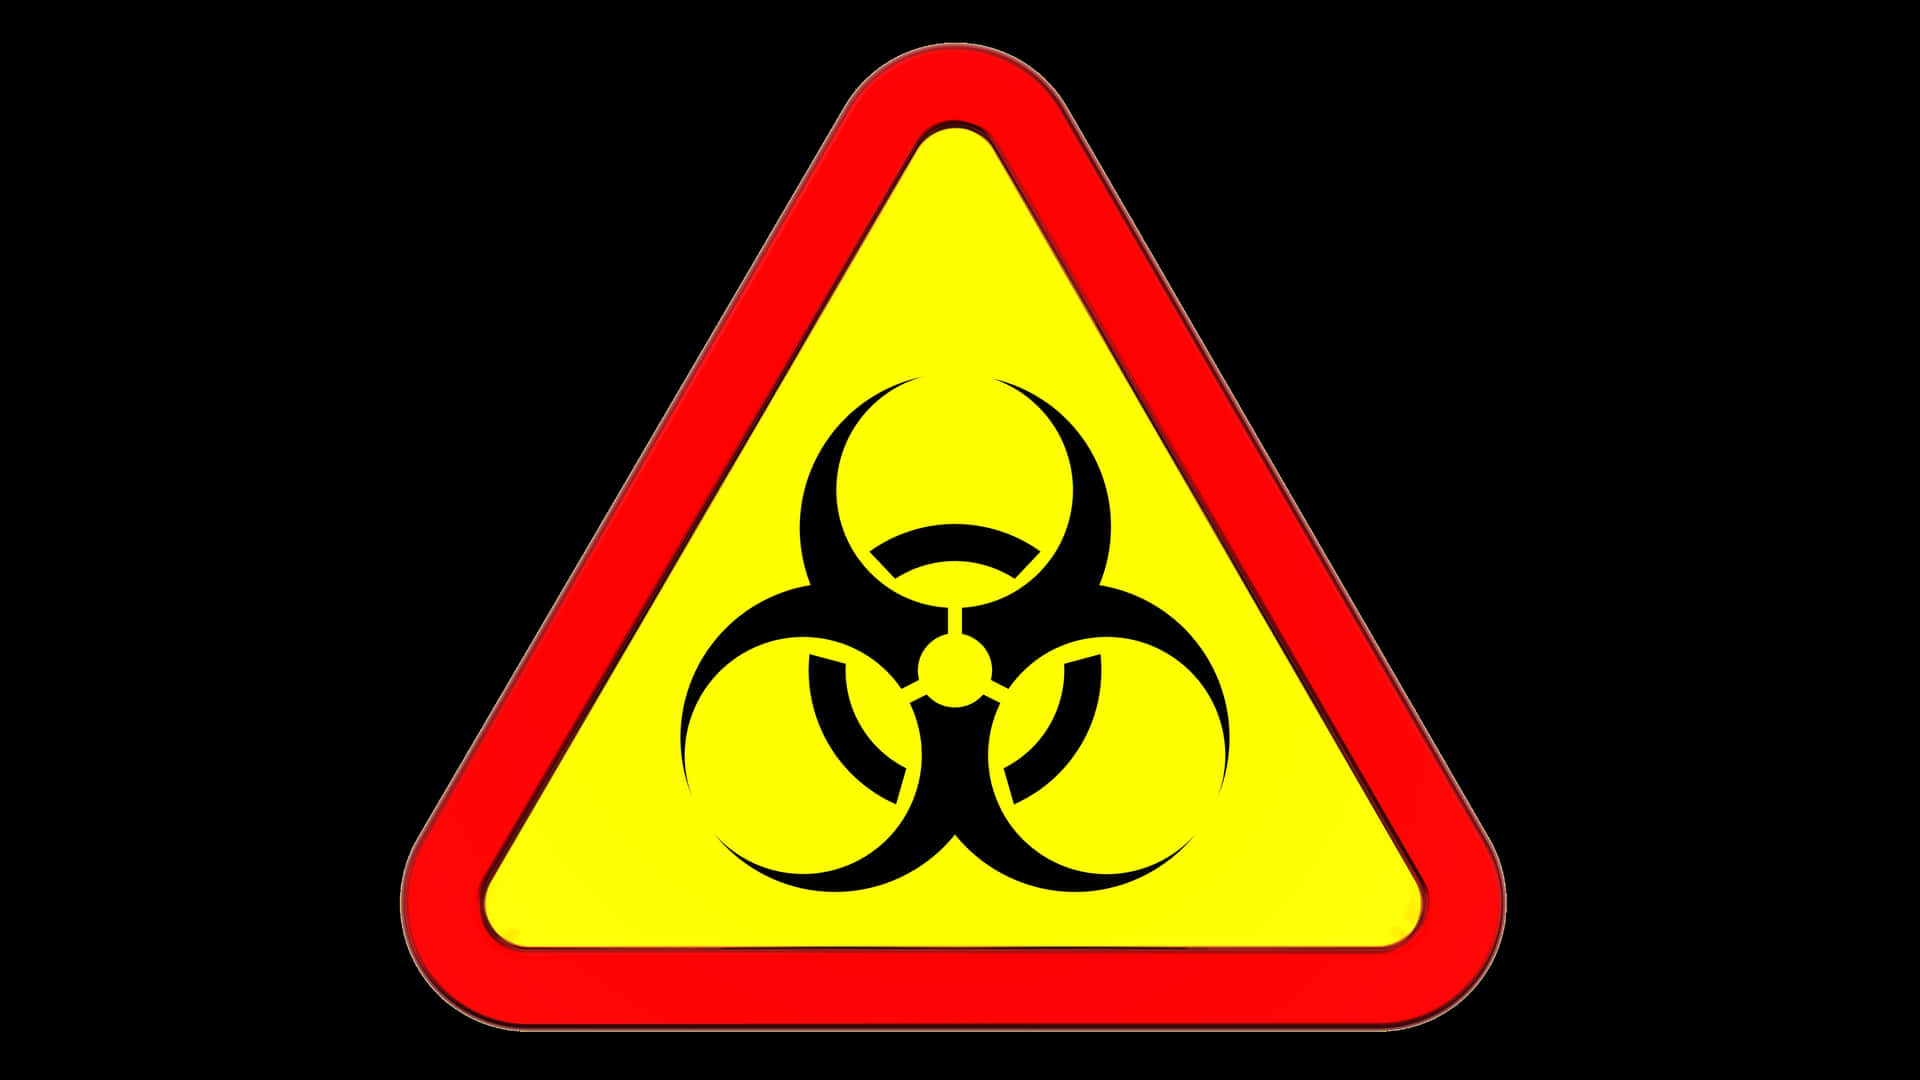 Triángulocon El Símbolo Tóxico De Biohazard. Fondo de pantalla